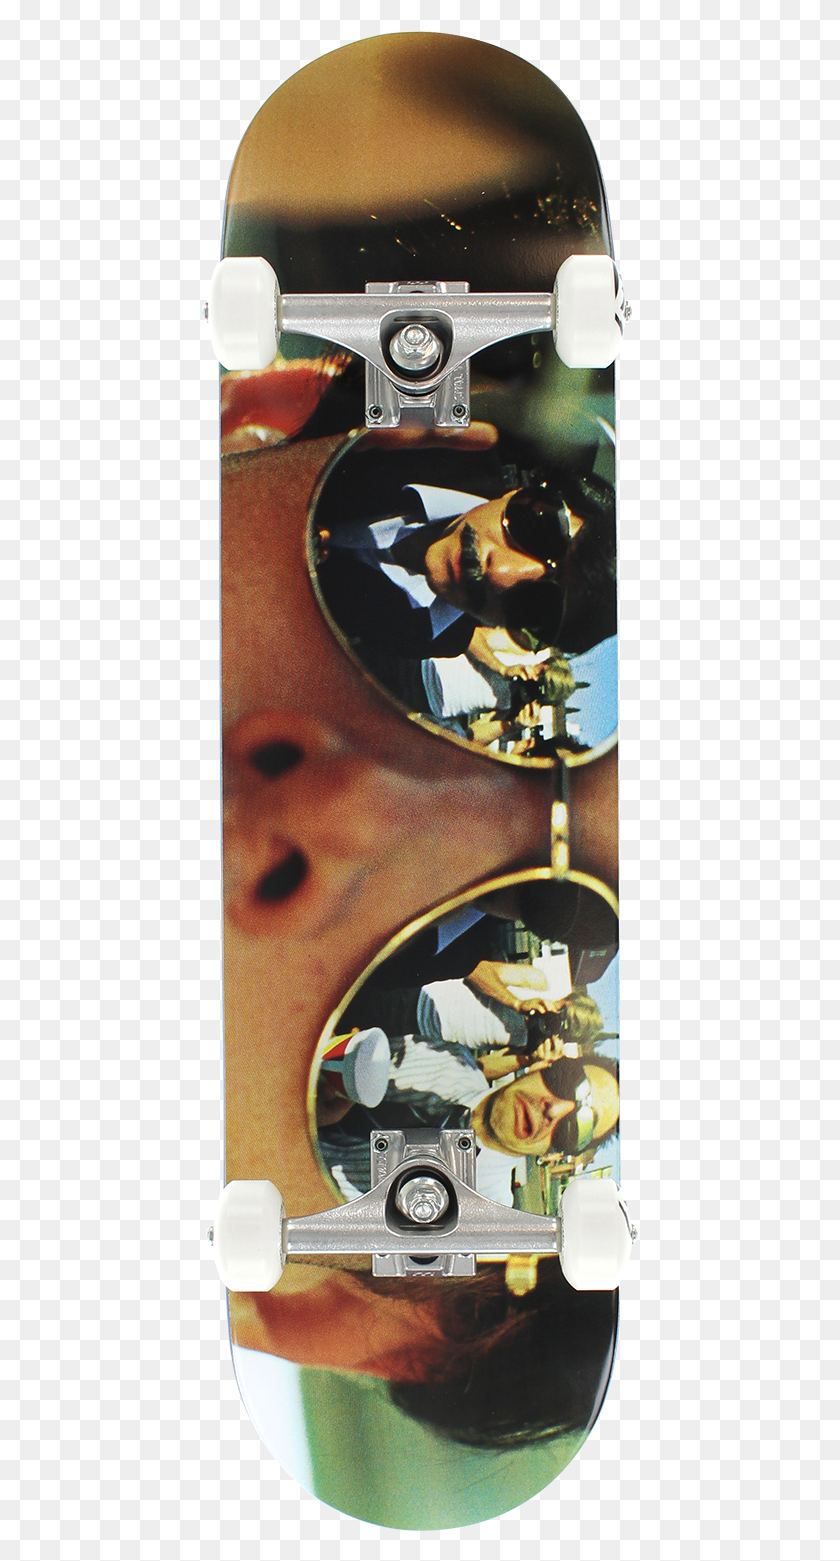 437x1501 Descargar Png / Beastie Boys Spike Photo Complete, Gafas De Sol, Accesorios, Accesorio Hd Png